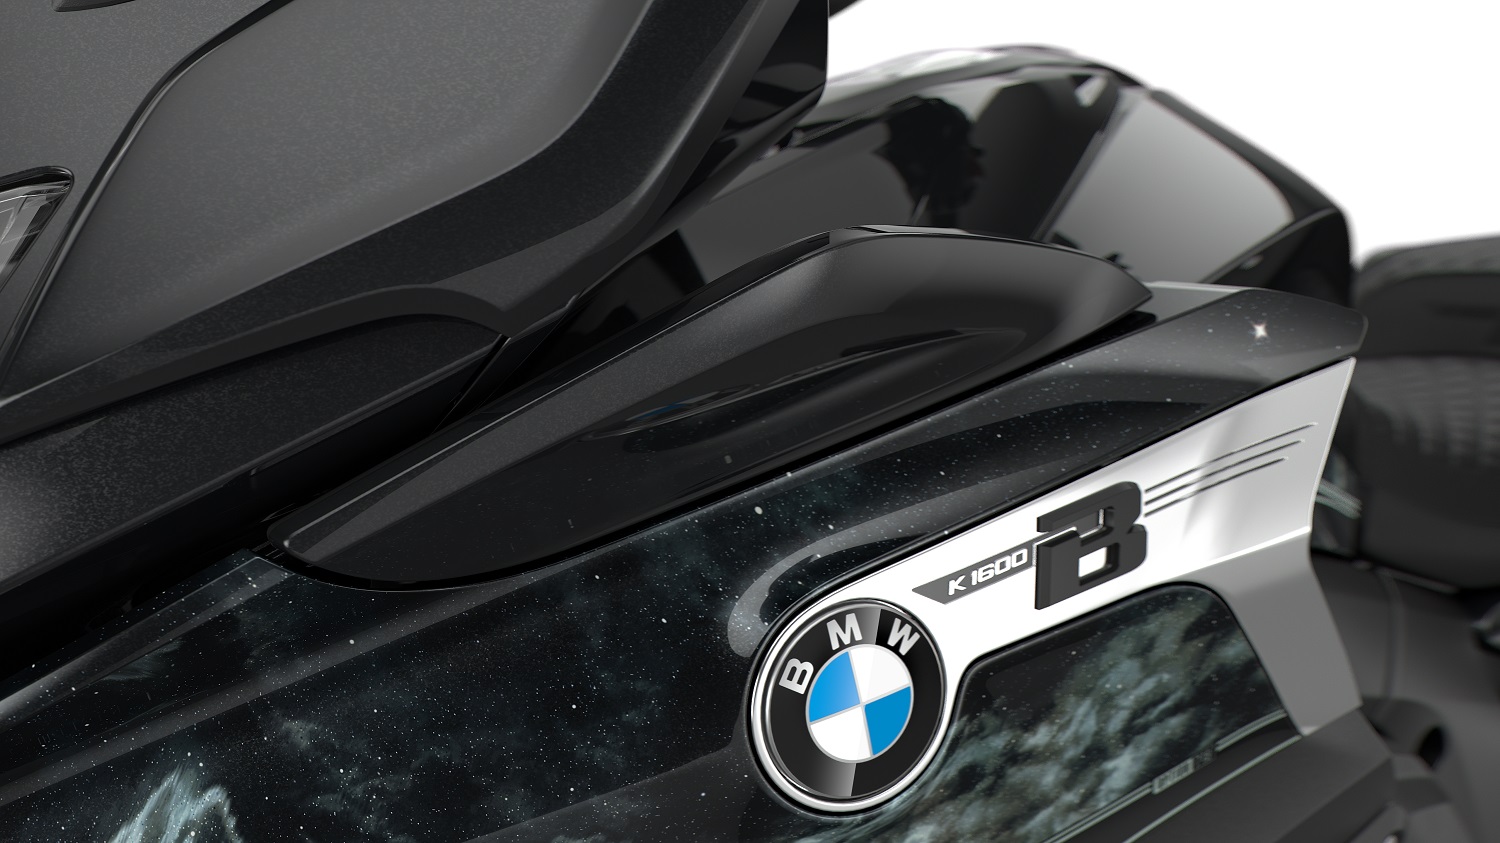 Lateral da BMW K 1600 Bagger preta com logomarca da BMW e detalhes de ilustração de universo. 